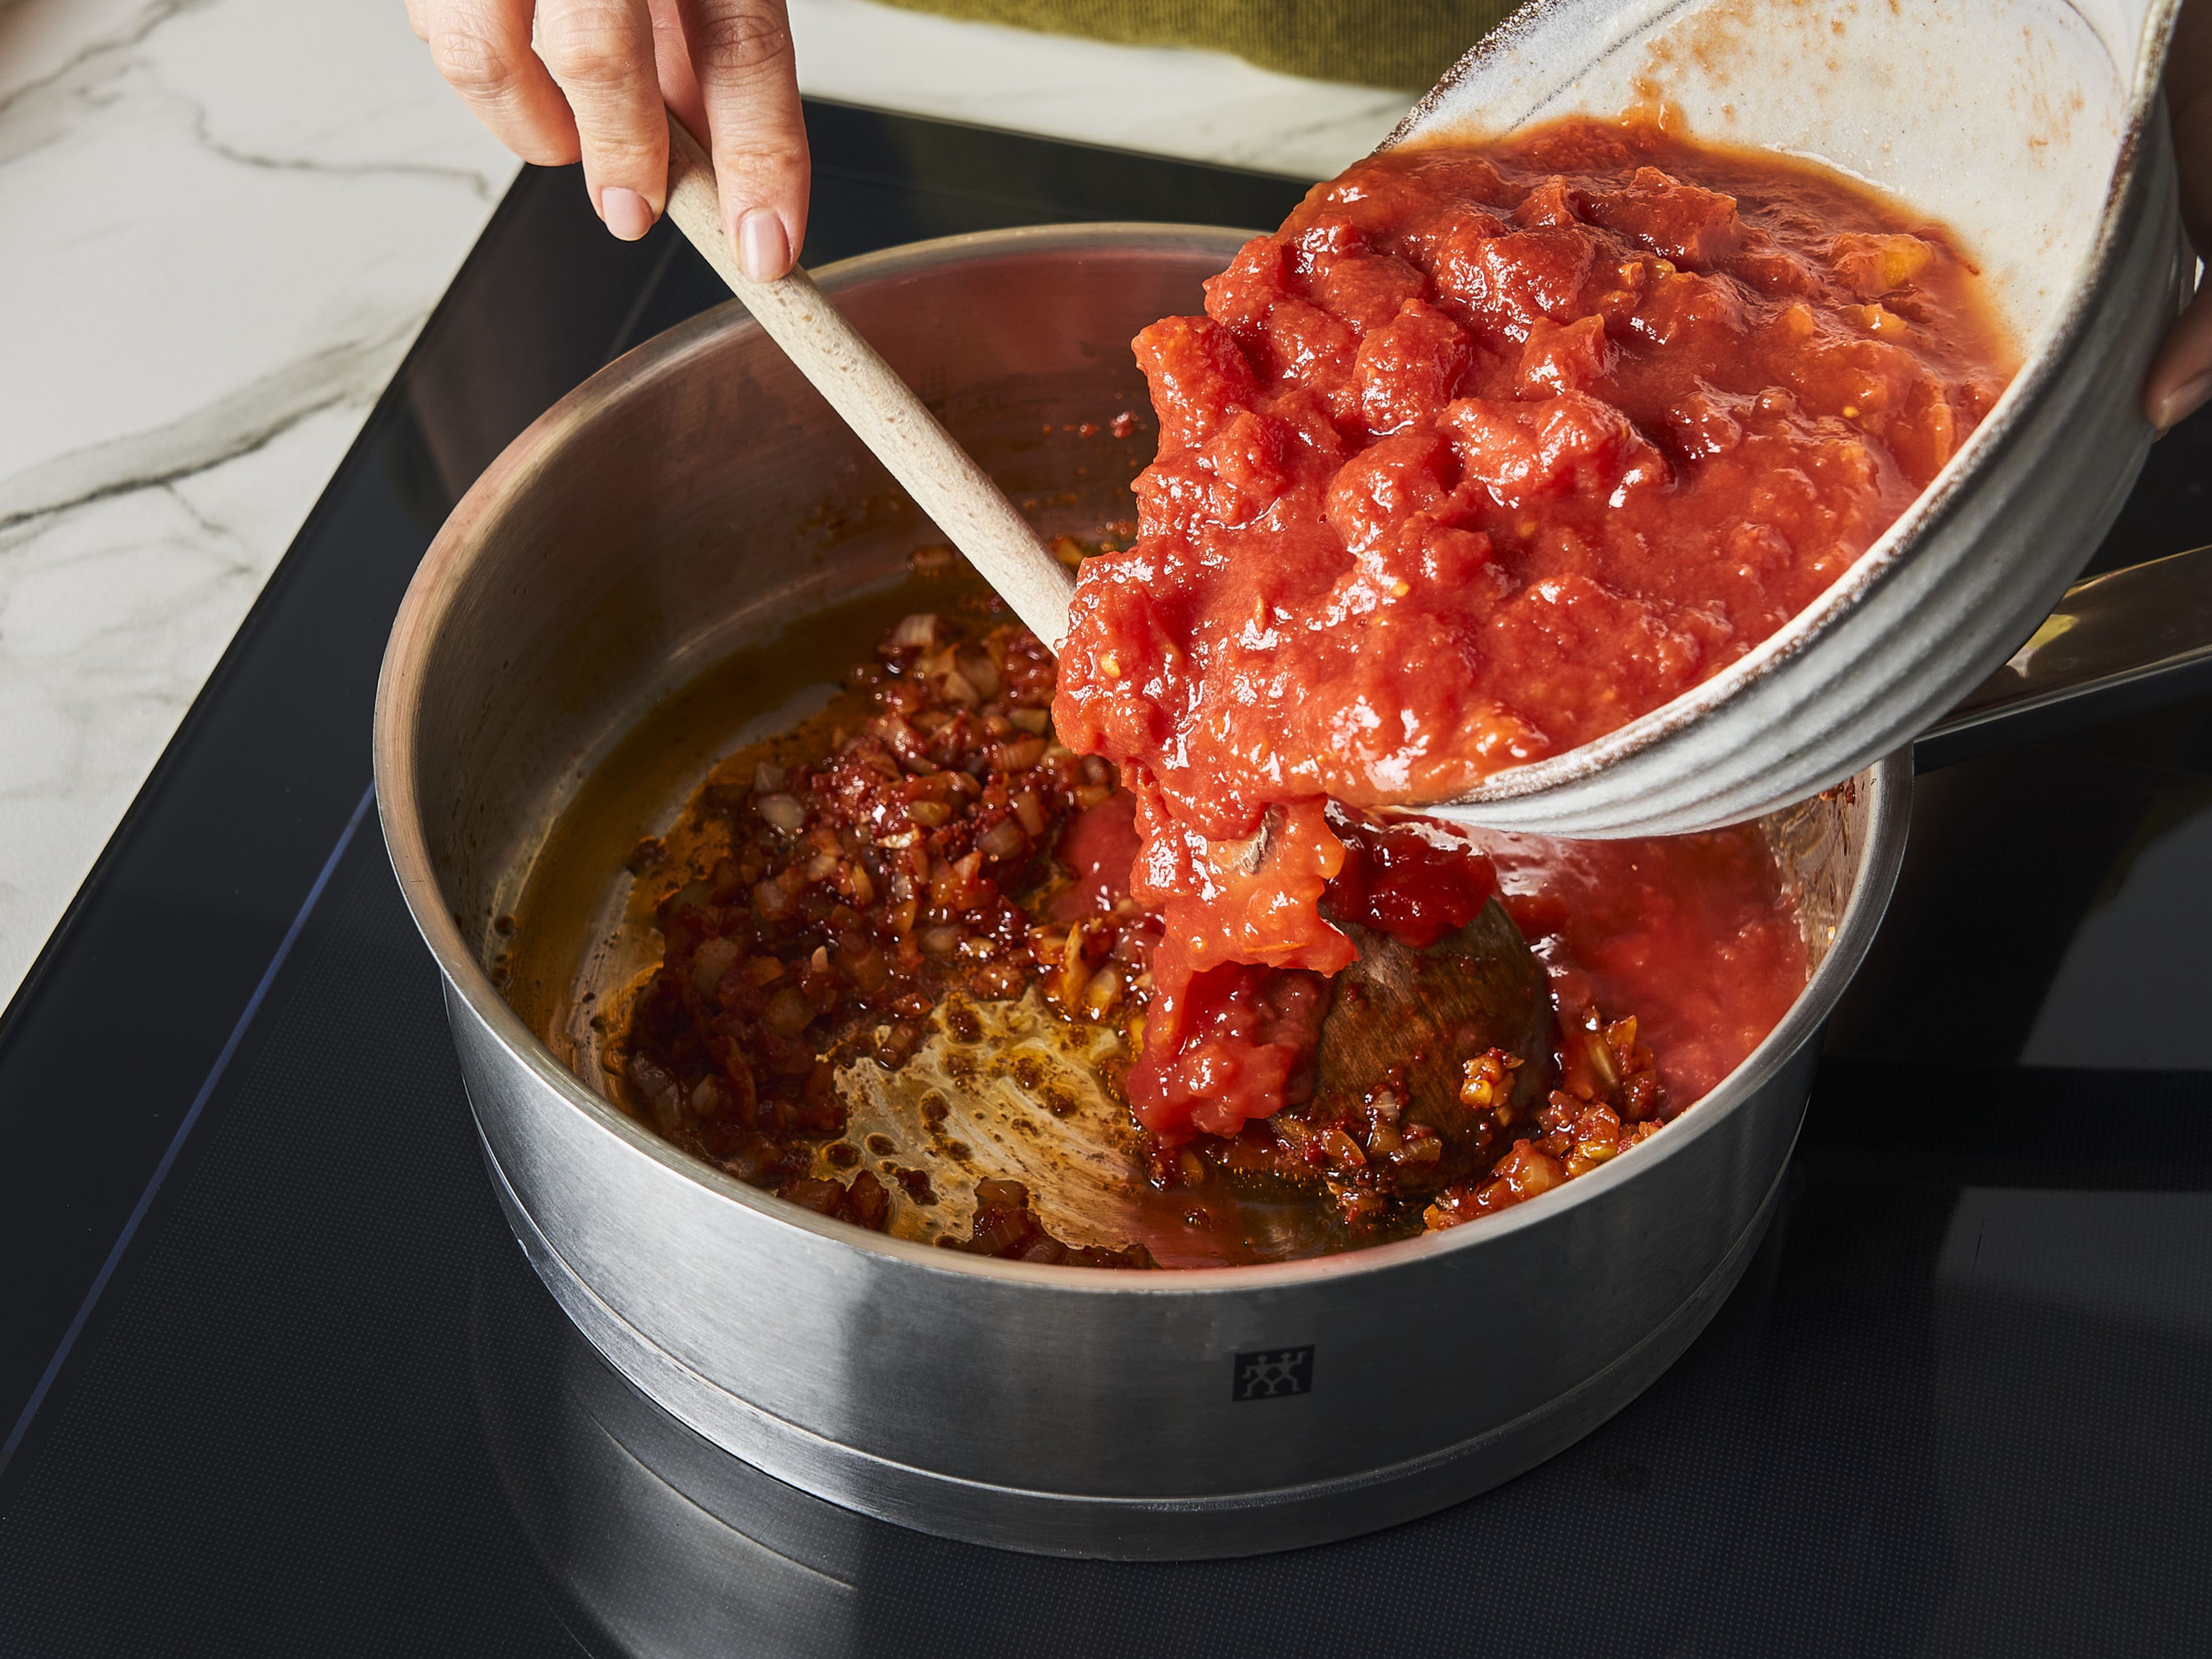 Tomaten aus der Dose in den Topf geben und zum Kochen bringen. Salz, Pfeffer, Oregano, Thymian und Rosmarin zur Tomatensoße geben. Für ca. 10–15 Min. köcheln lassen.